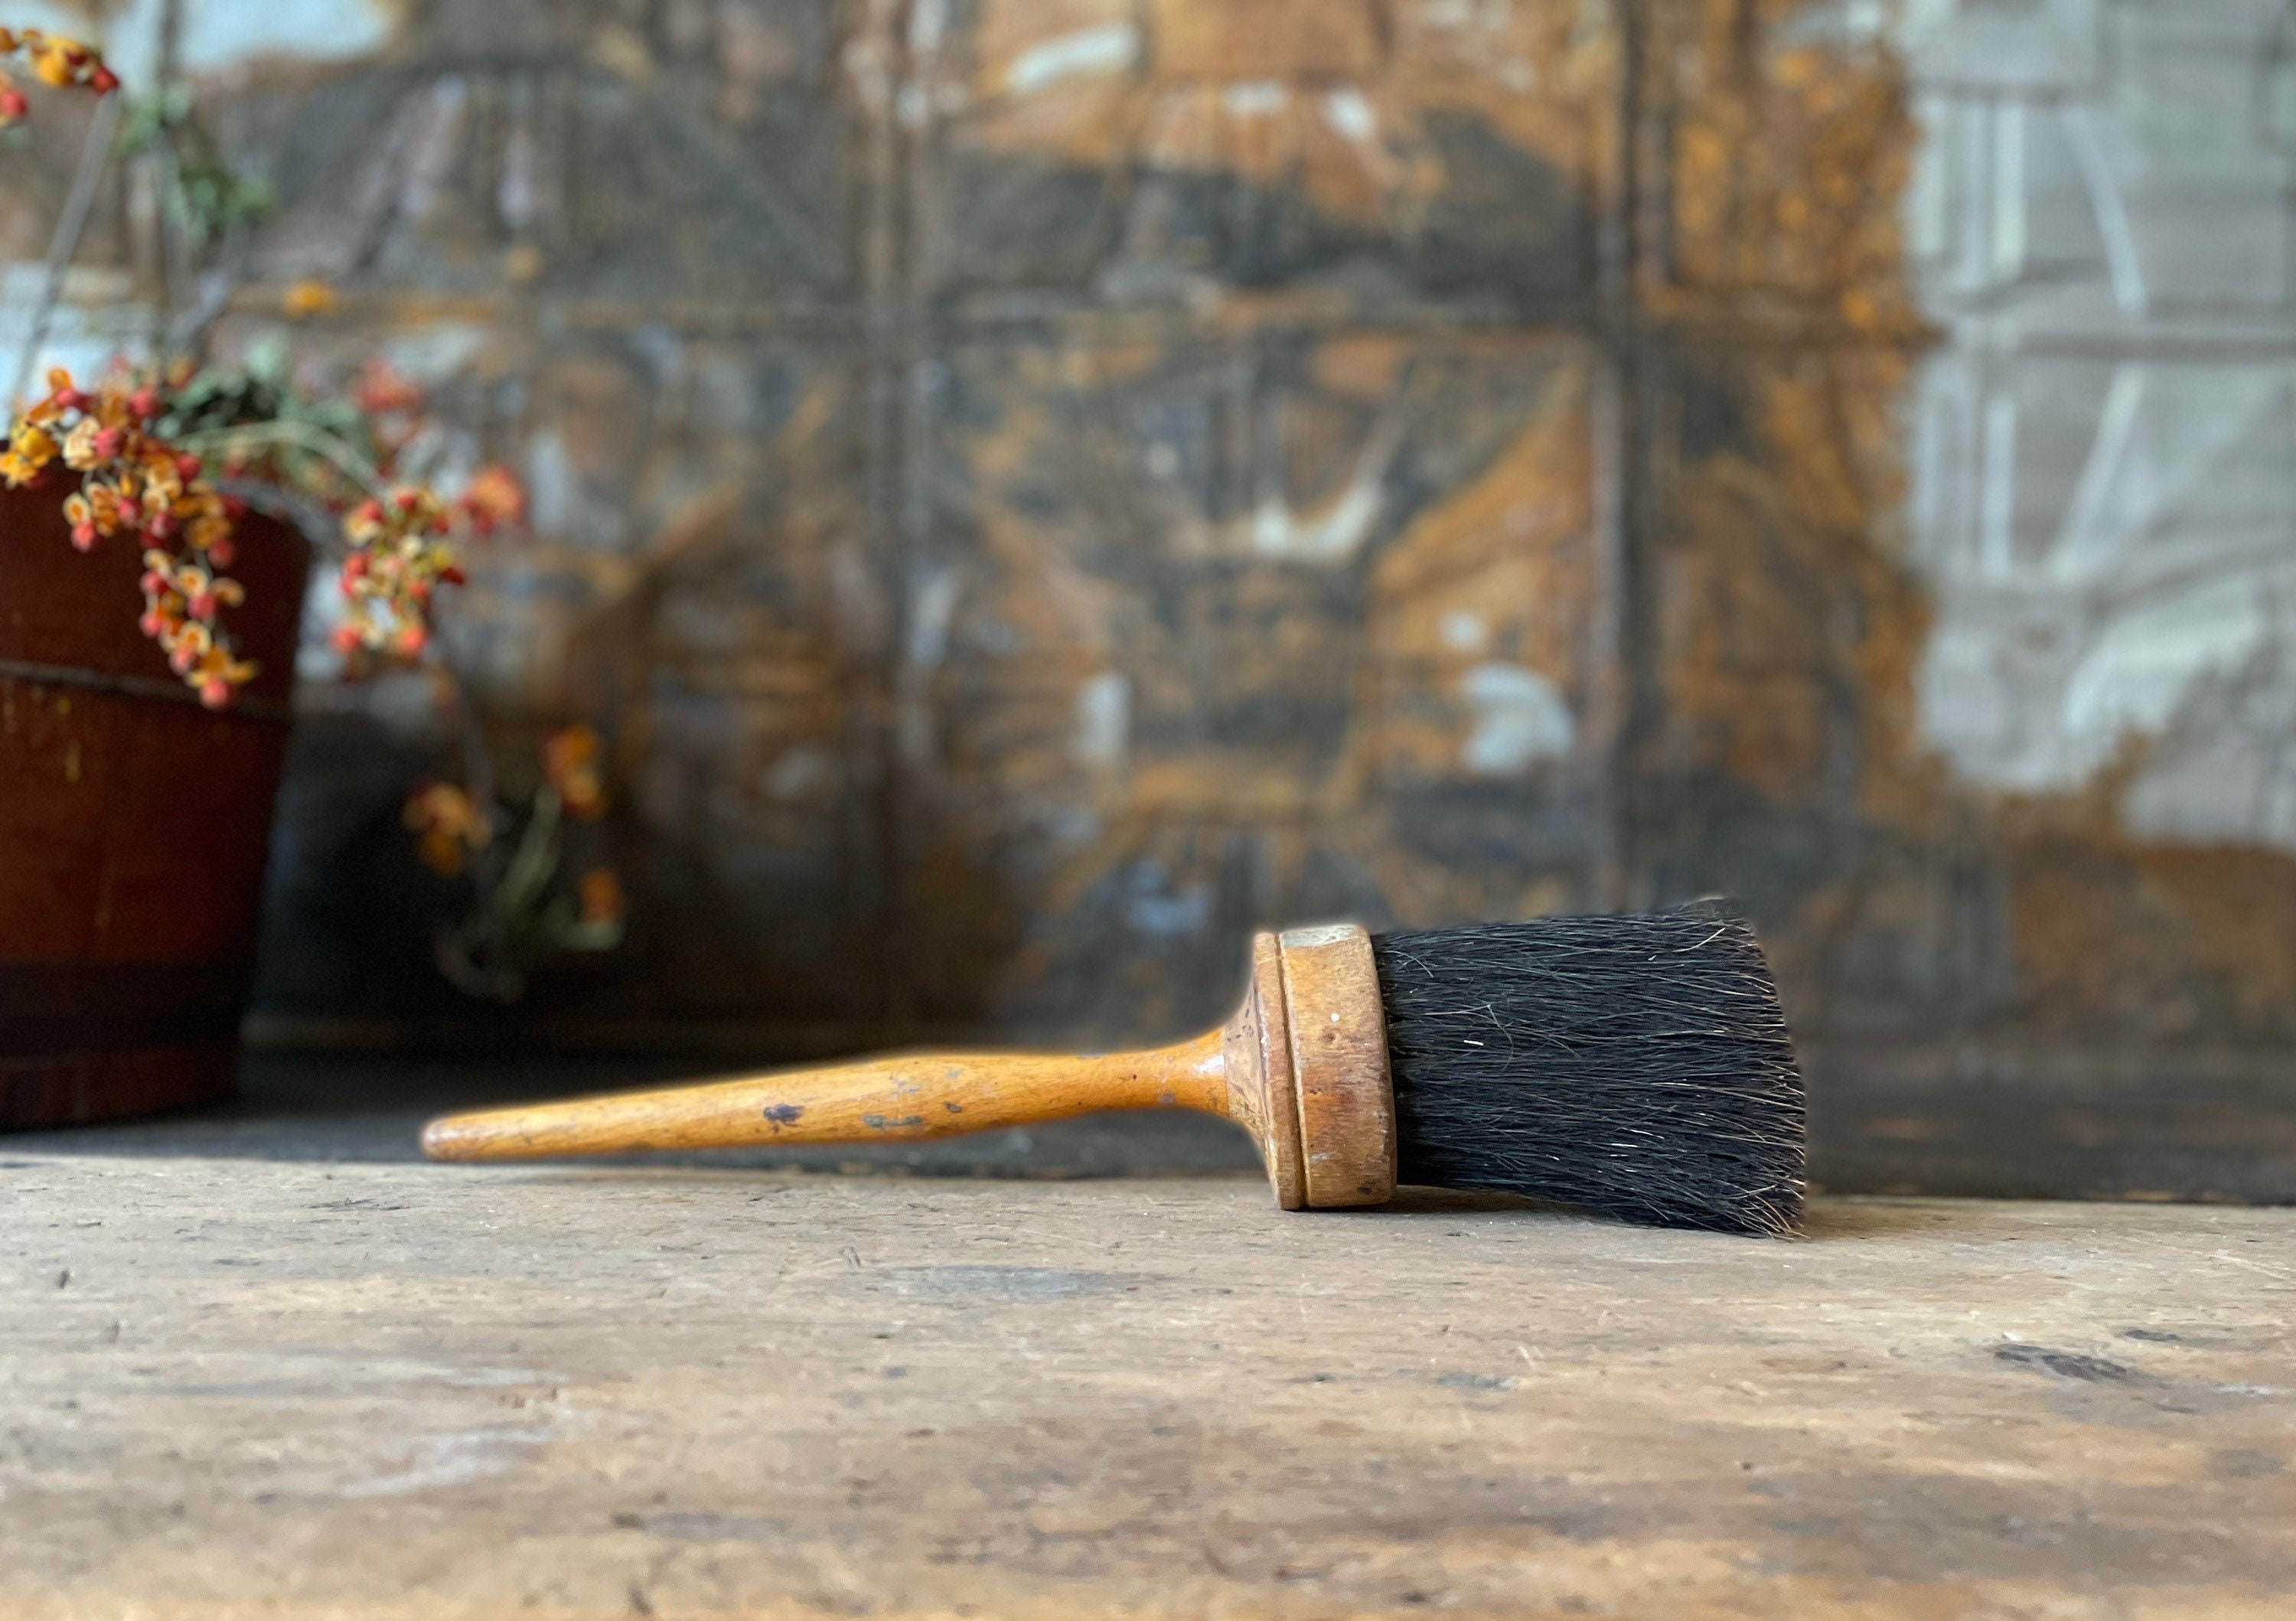 Vintage Large Paint Brush, Primitive 5” Wide, W/Wood Handle 2” Deep